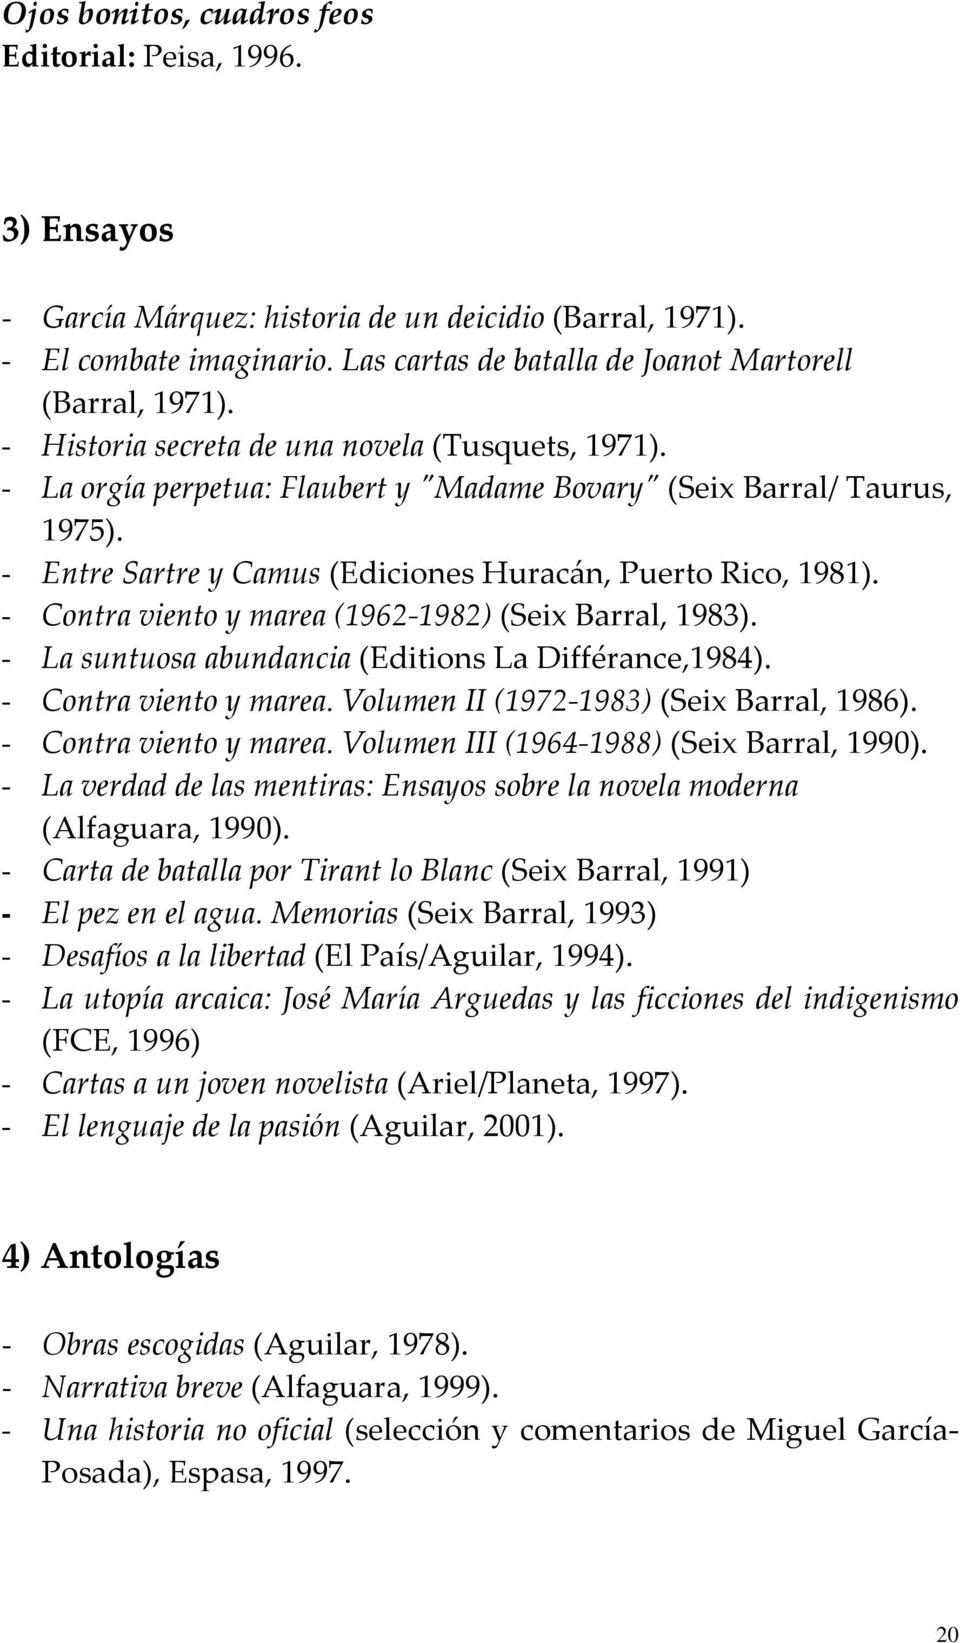 - Entre Sartre y Camus (Ediciones Huracán, Puerto Rico, 1981). - Contra viento y marea (1962 1982) (Seix Barral, 1983). - La suntuosa abundancia (Editions La Différance,1984). - Contra viento y marea. Volumen II (1972 1983) (Seix Barral, 1986).